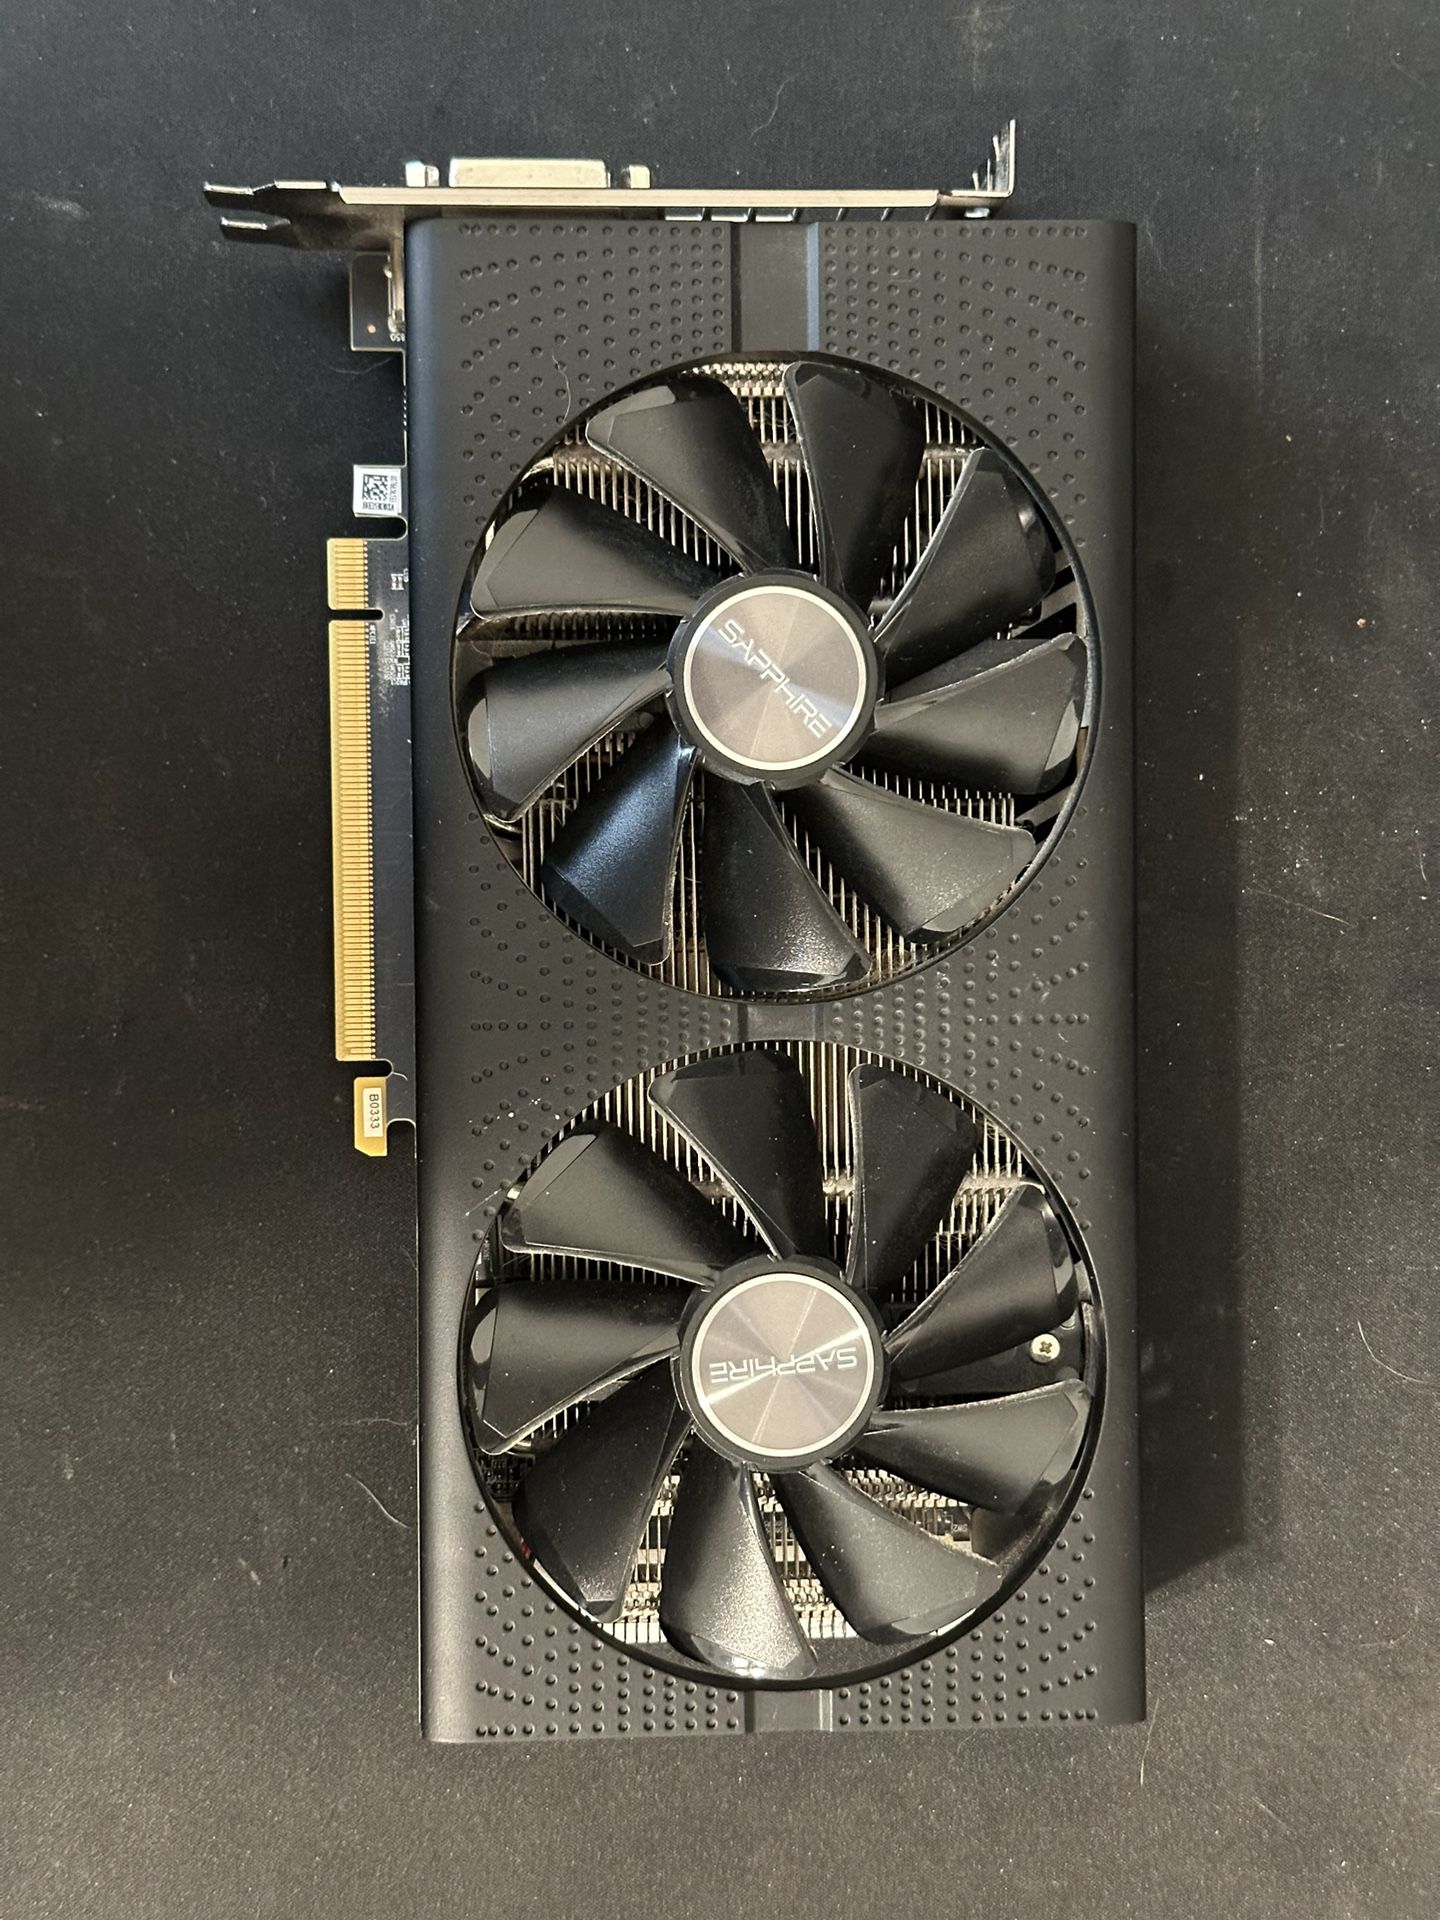 AMD RX 580 8GB GPU (Sapphire)